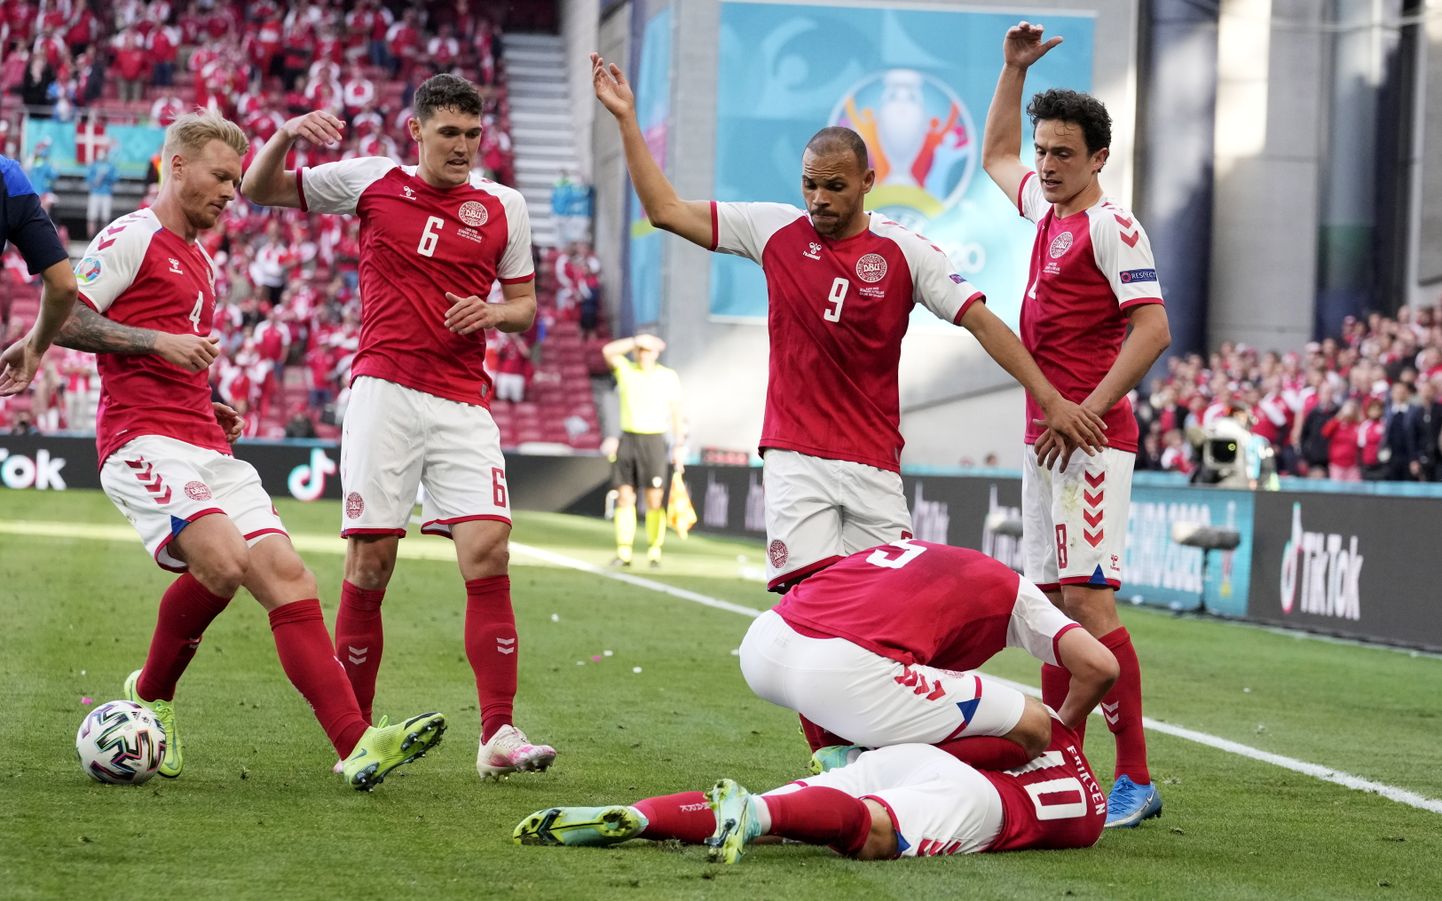 Dānijas futbola izlases zvaigzne Eriksens saļimst spēles laikā.